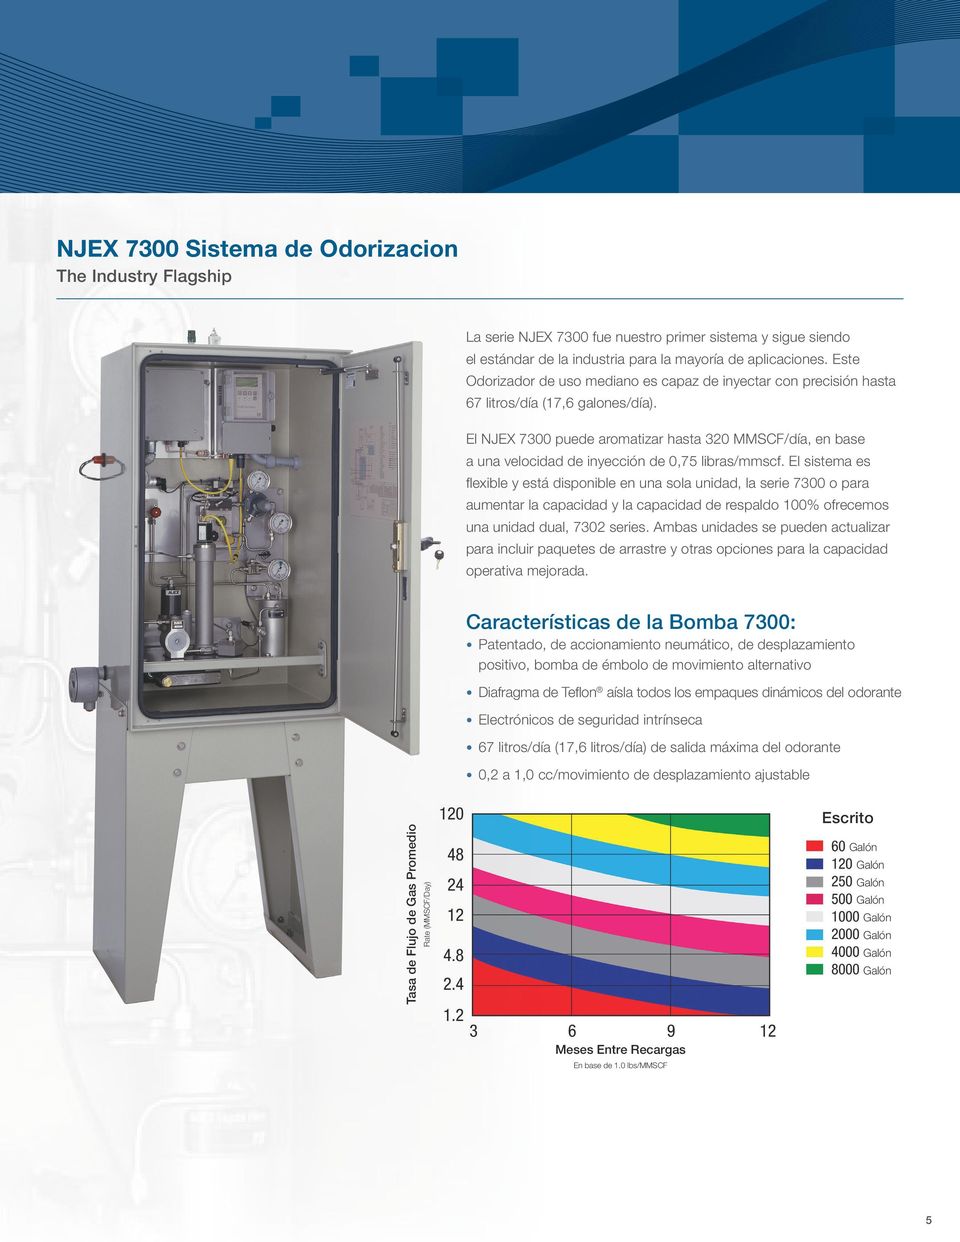 El NJEX 7300 puede aromatizar hasta 320 MMSCF/día, en base a una velocidad de inyección de 0,75 libras/mmscf.